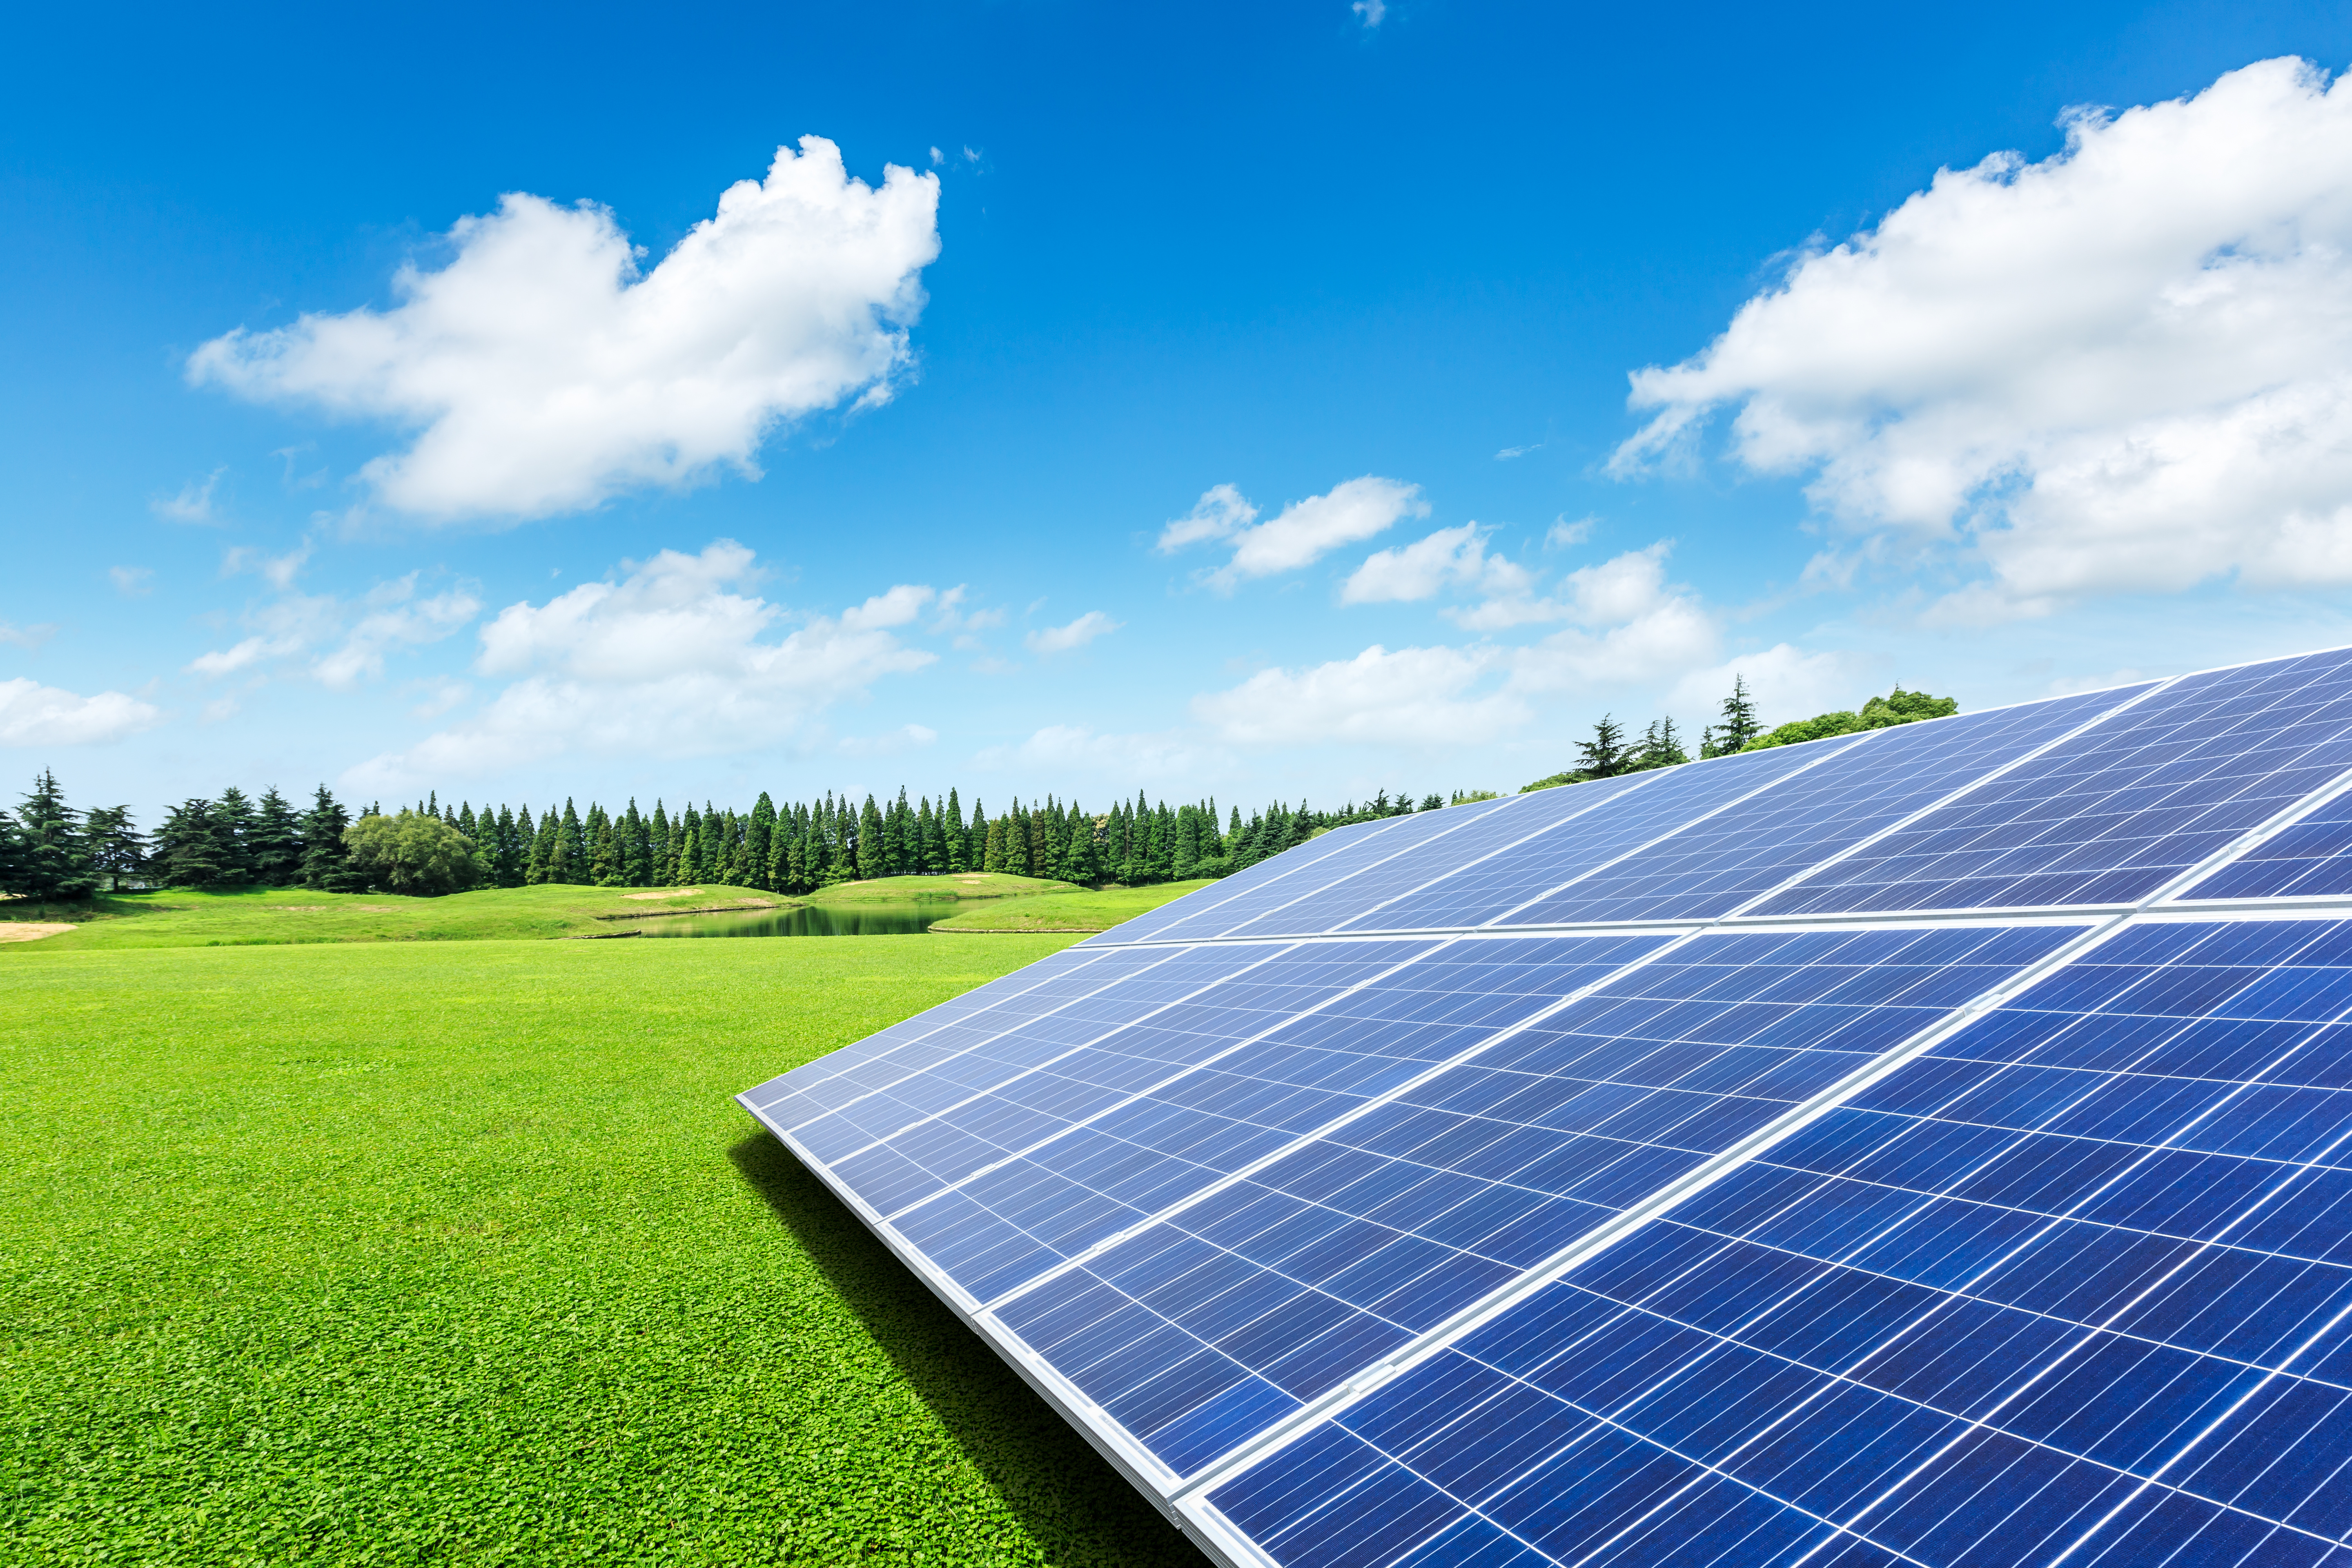  Arten der photovoltaischen Stromerzeugung